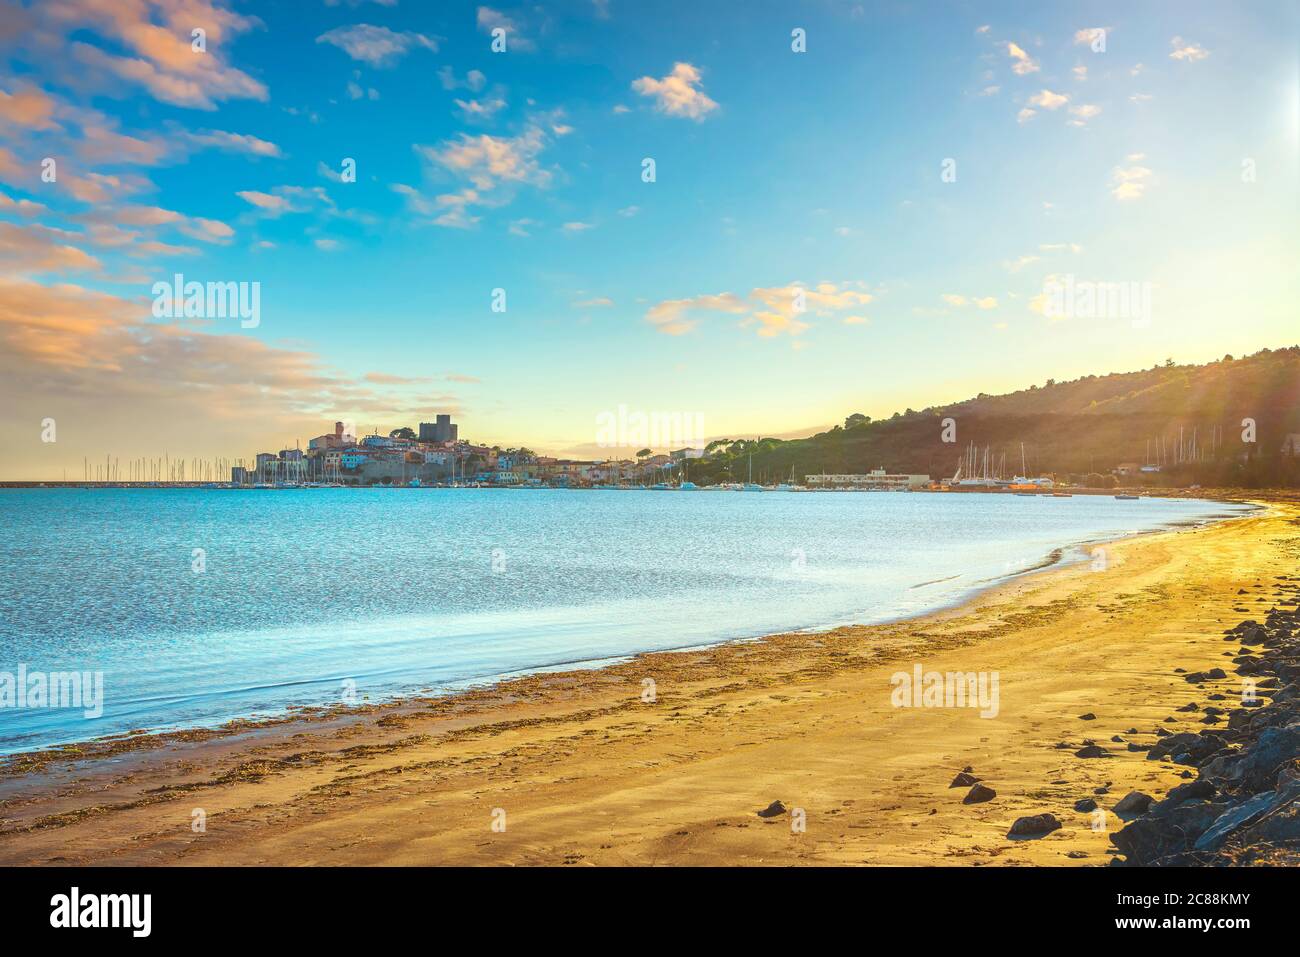 Spiaggia e villaggio Talamone al tramonto. Destinazione turistica italiana in Maremma. Grosseto, Toscana, Italia. Foto Stock